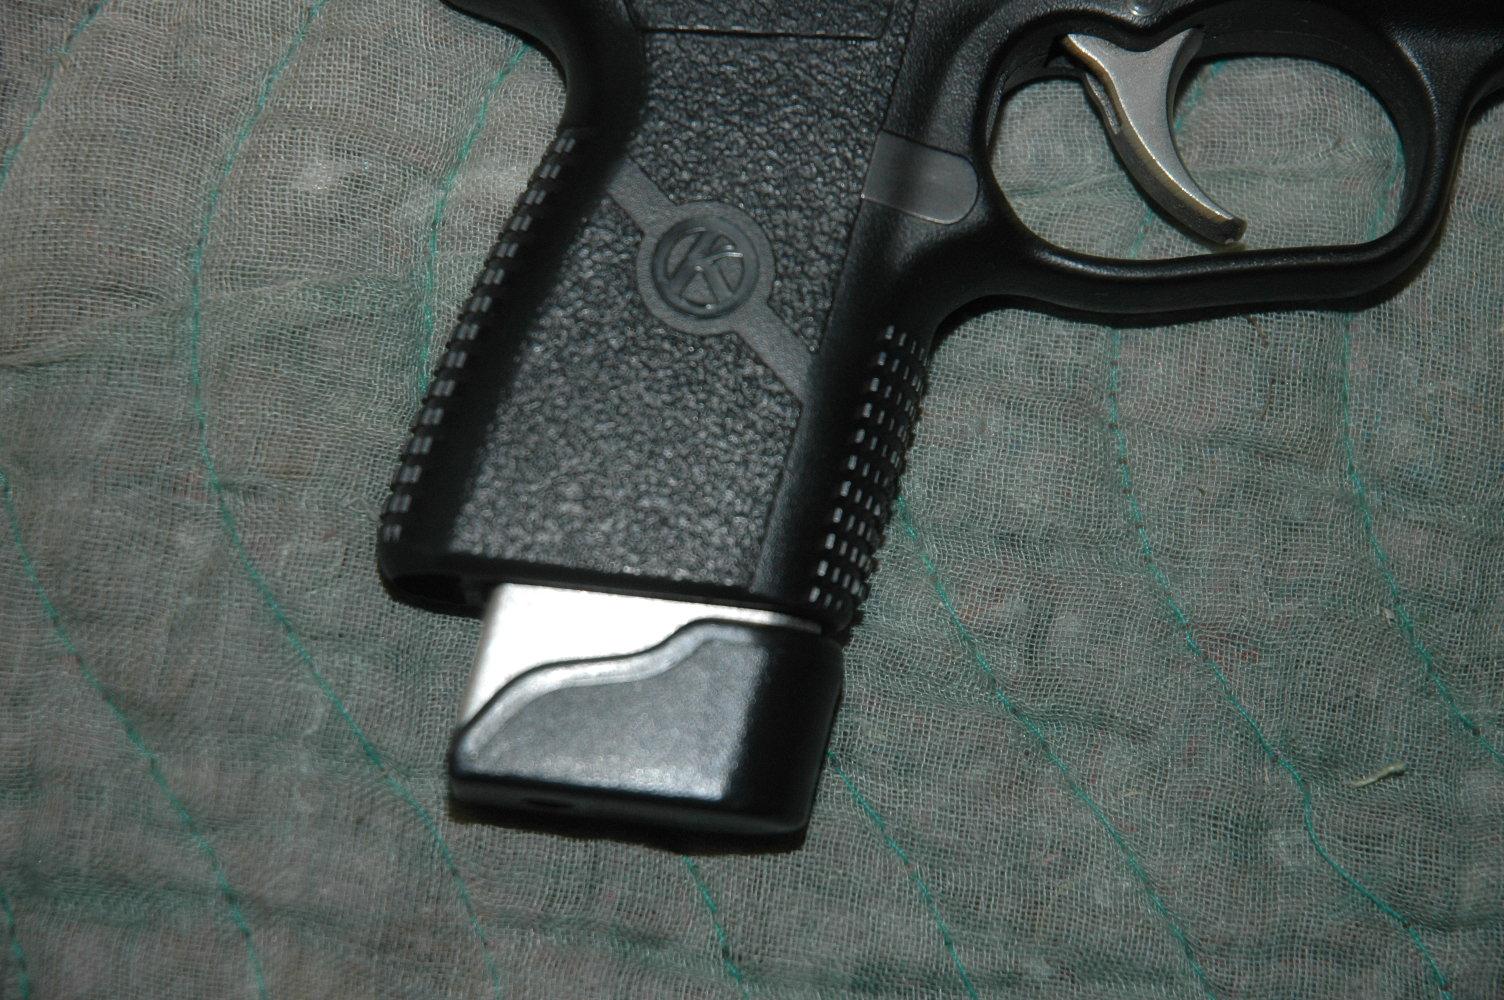 Kahr PM40 Compact Pistol